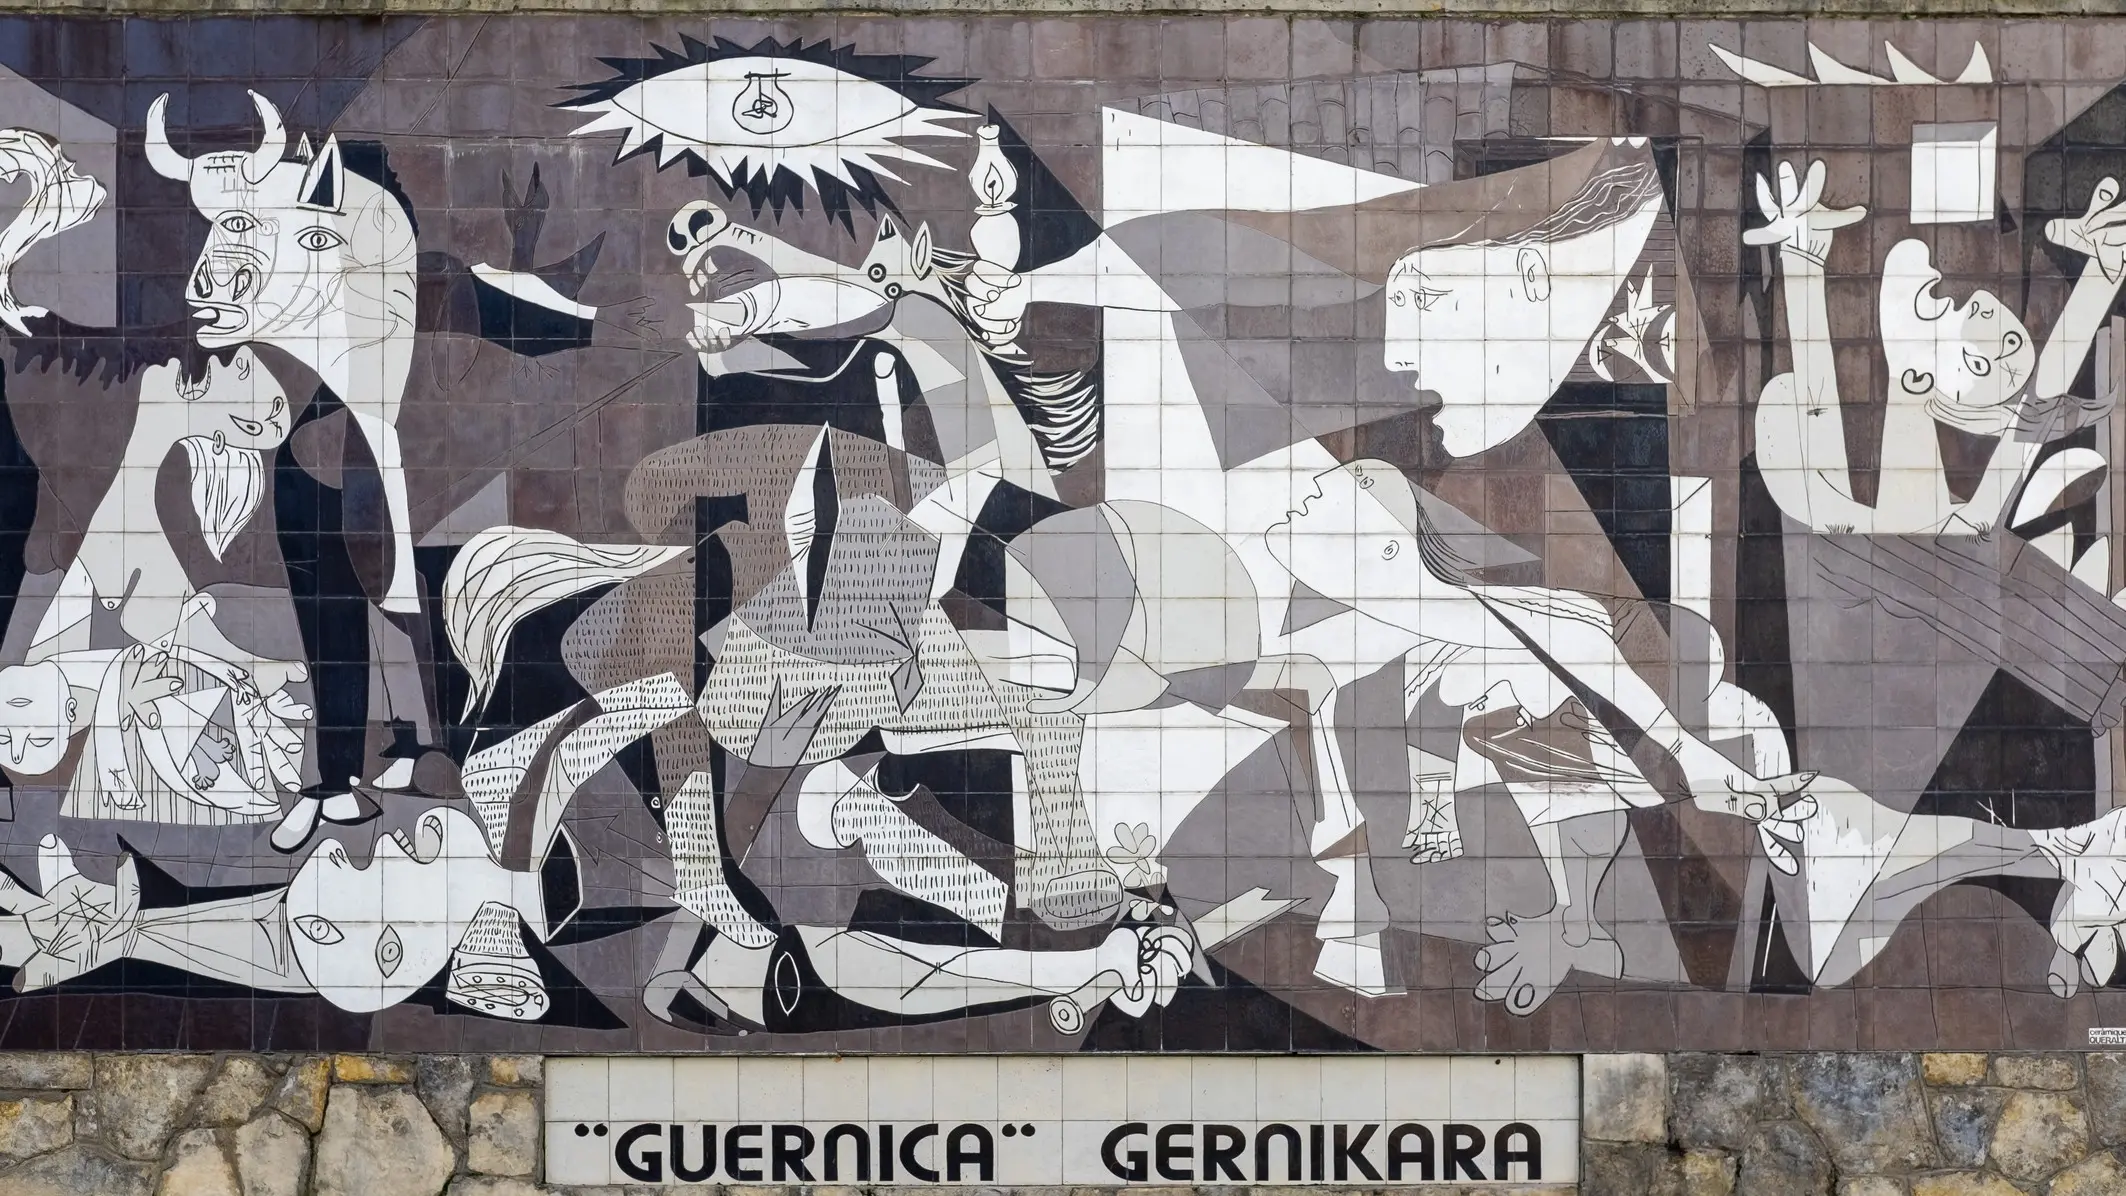 Guernica, la strage nazista (con l'aiuto dei fascisti italiani) per sostenere la guerra del generale Franco